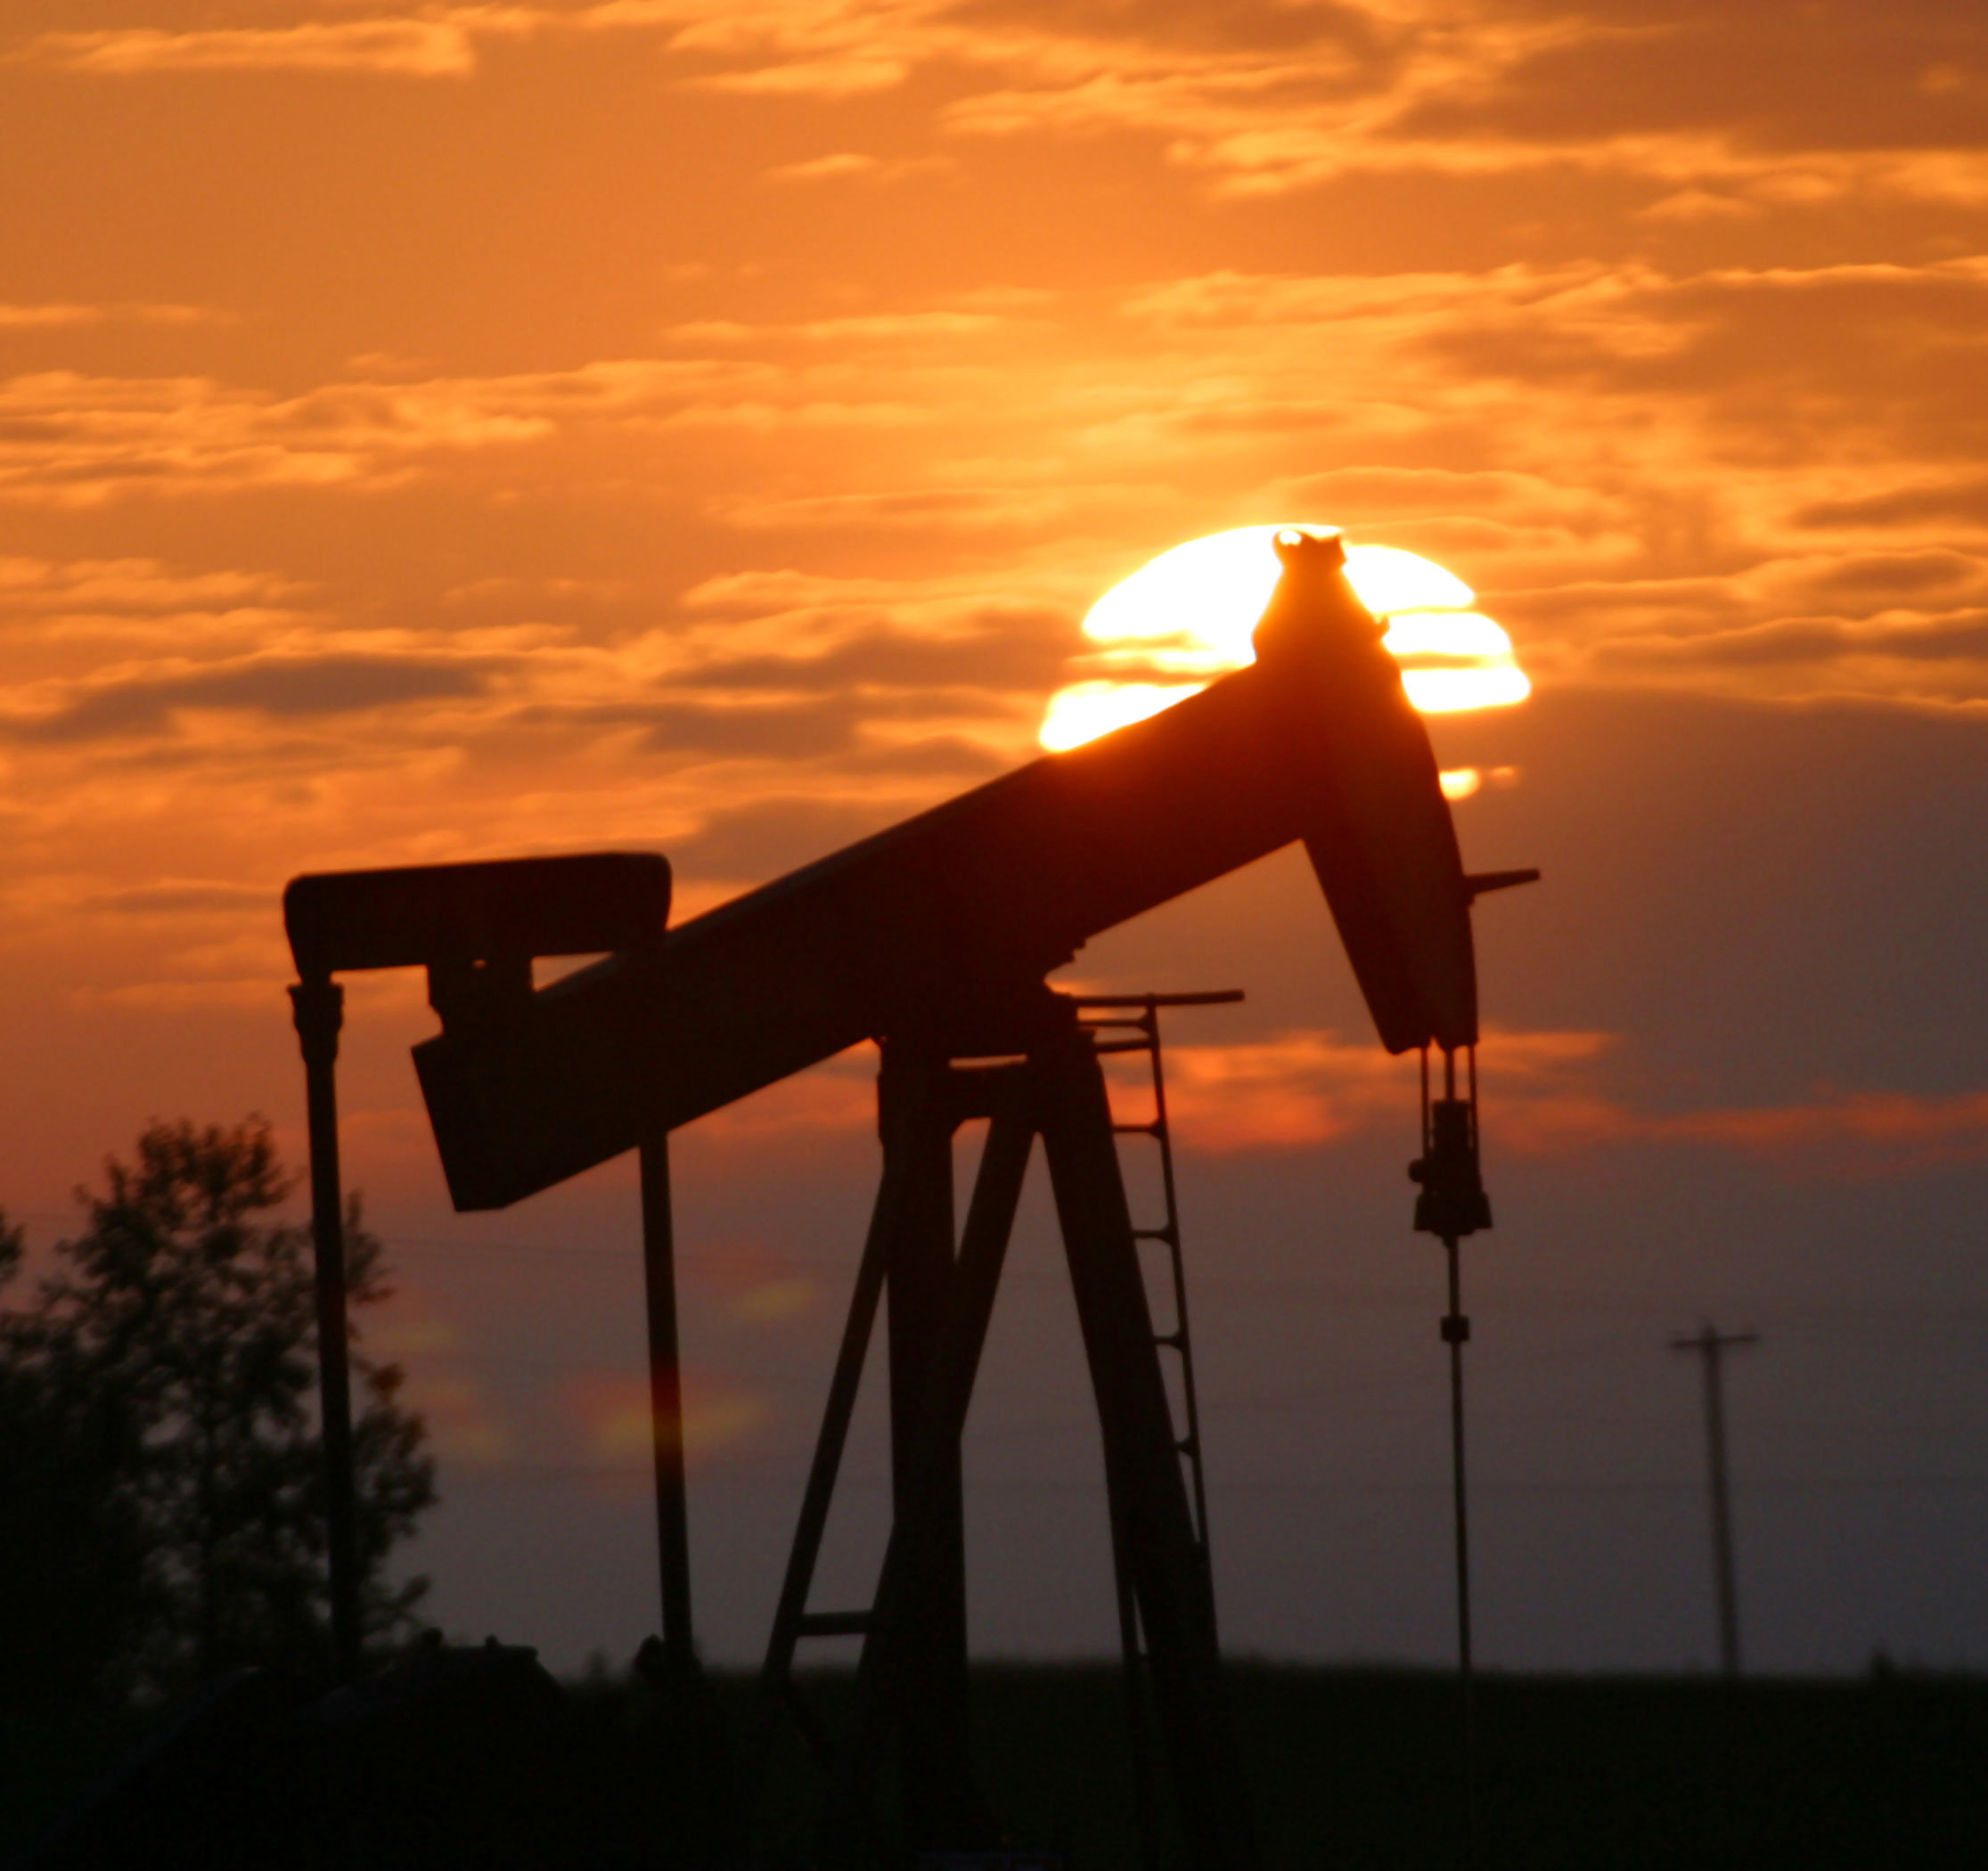 Does Peak Oil Really Matter?